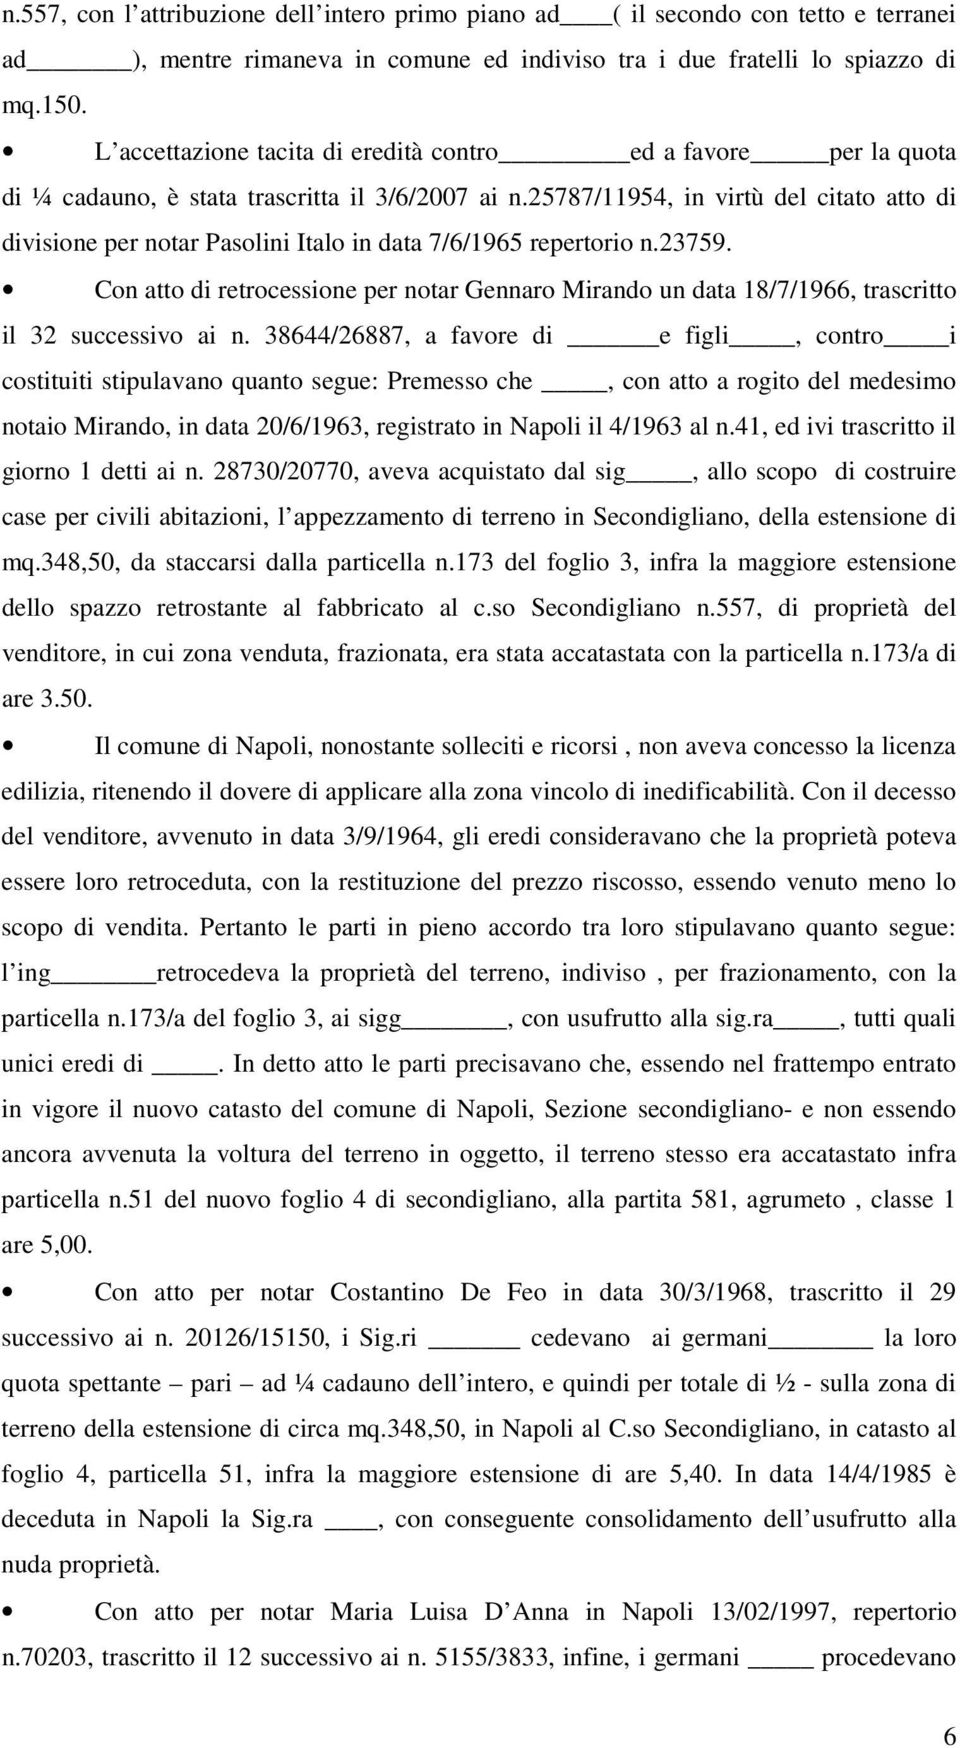 25787/11954, in virtù del citato atto di divisione per notar Pasolini Italo in data 7/6/1965 repertorio n.23759.